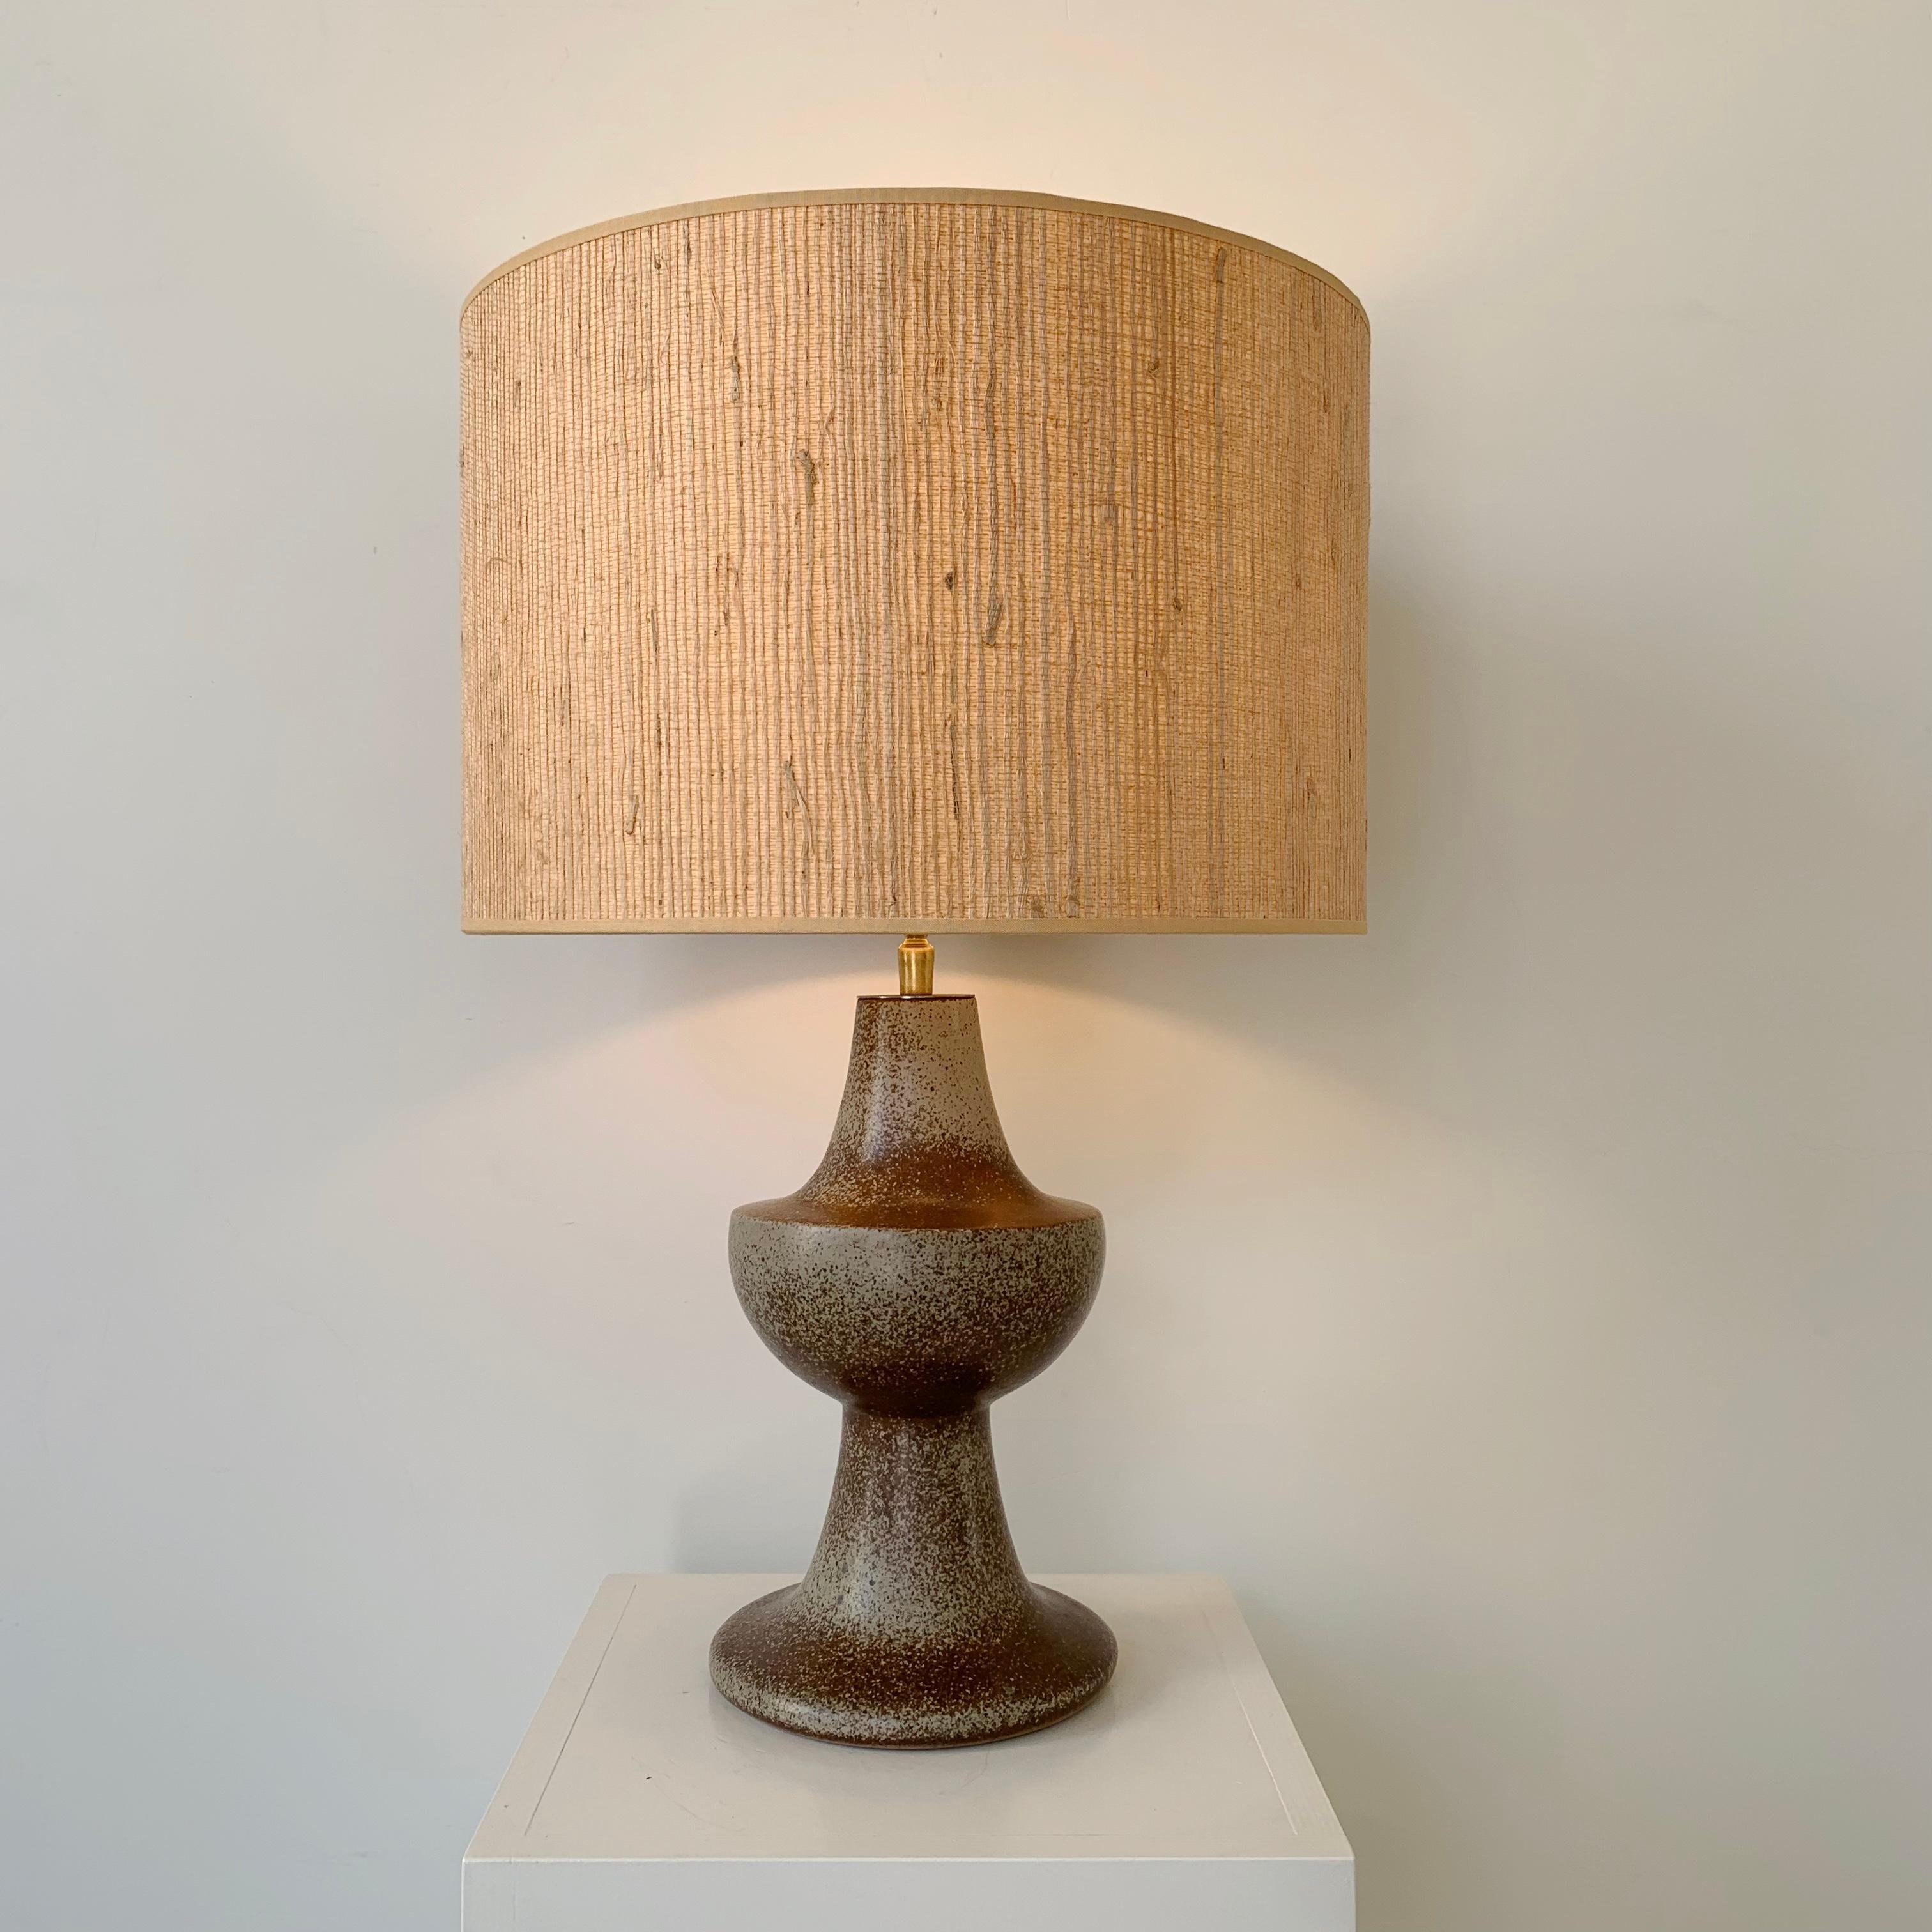 Lampe de table en céramique du milieu du siècle, vers 1960, France.
Grès émaillé, nouvelle teinte paille.
Câblée, une ampoule E27.
Dimensions : hauteur totale : 56 cm, diamètre de l'abat-jour : 37 cm.
Bon état.
Tous les achats sont couverts par